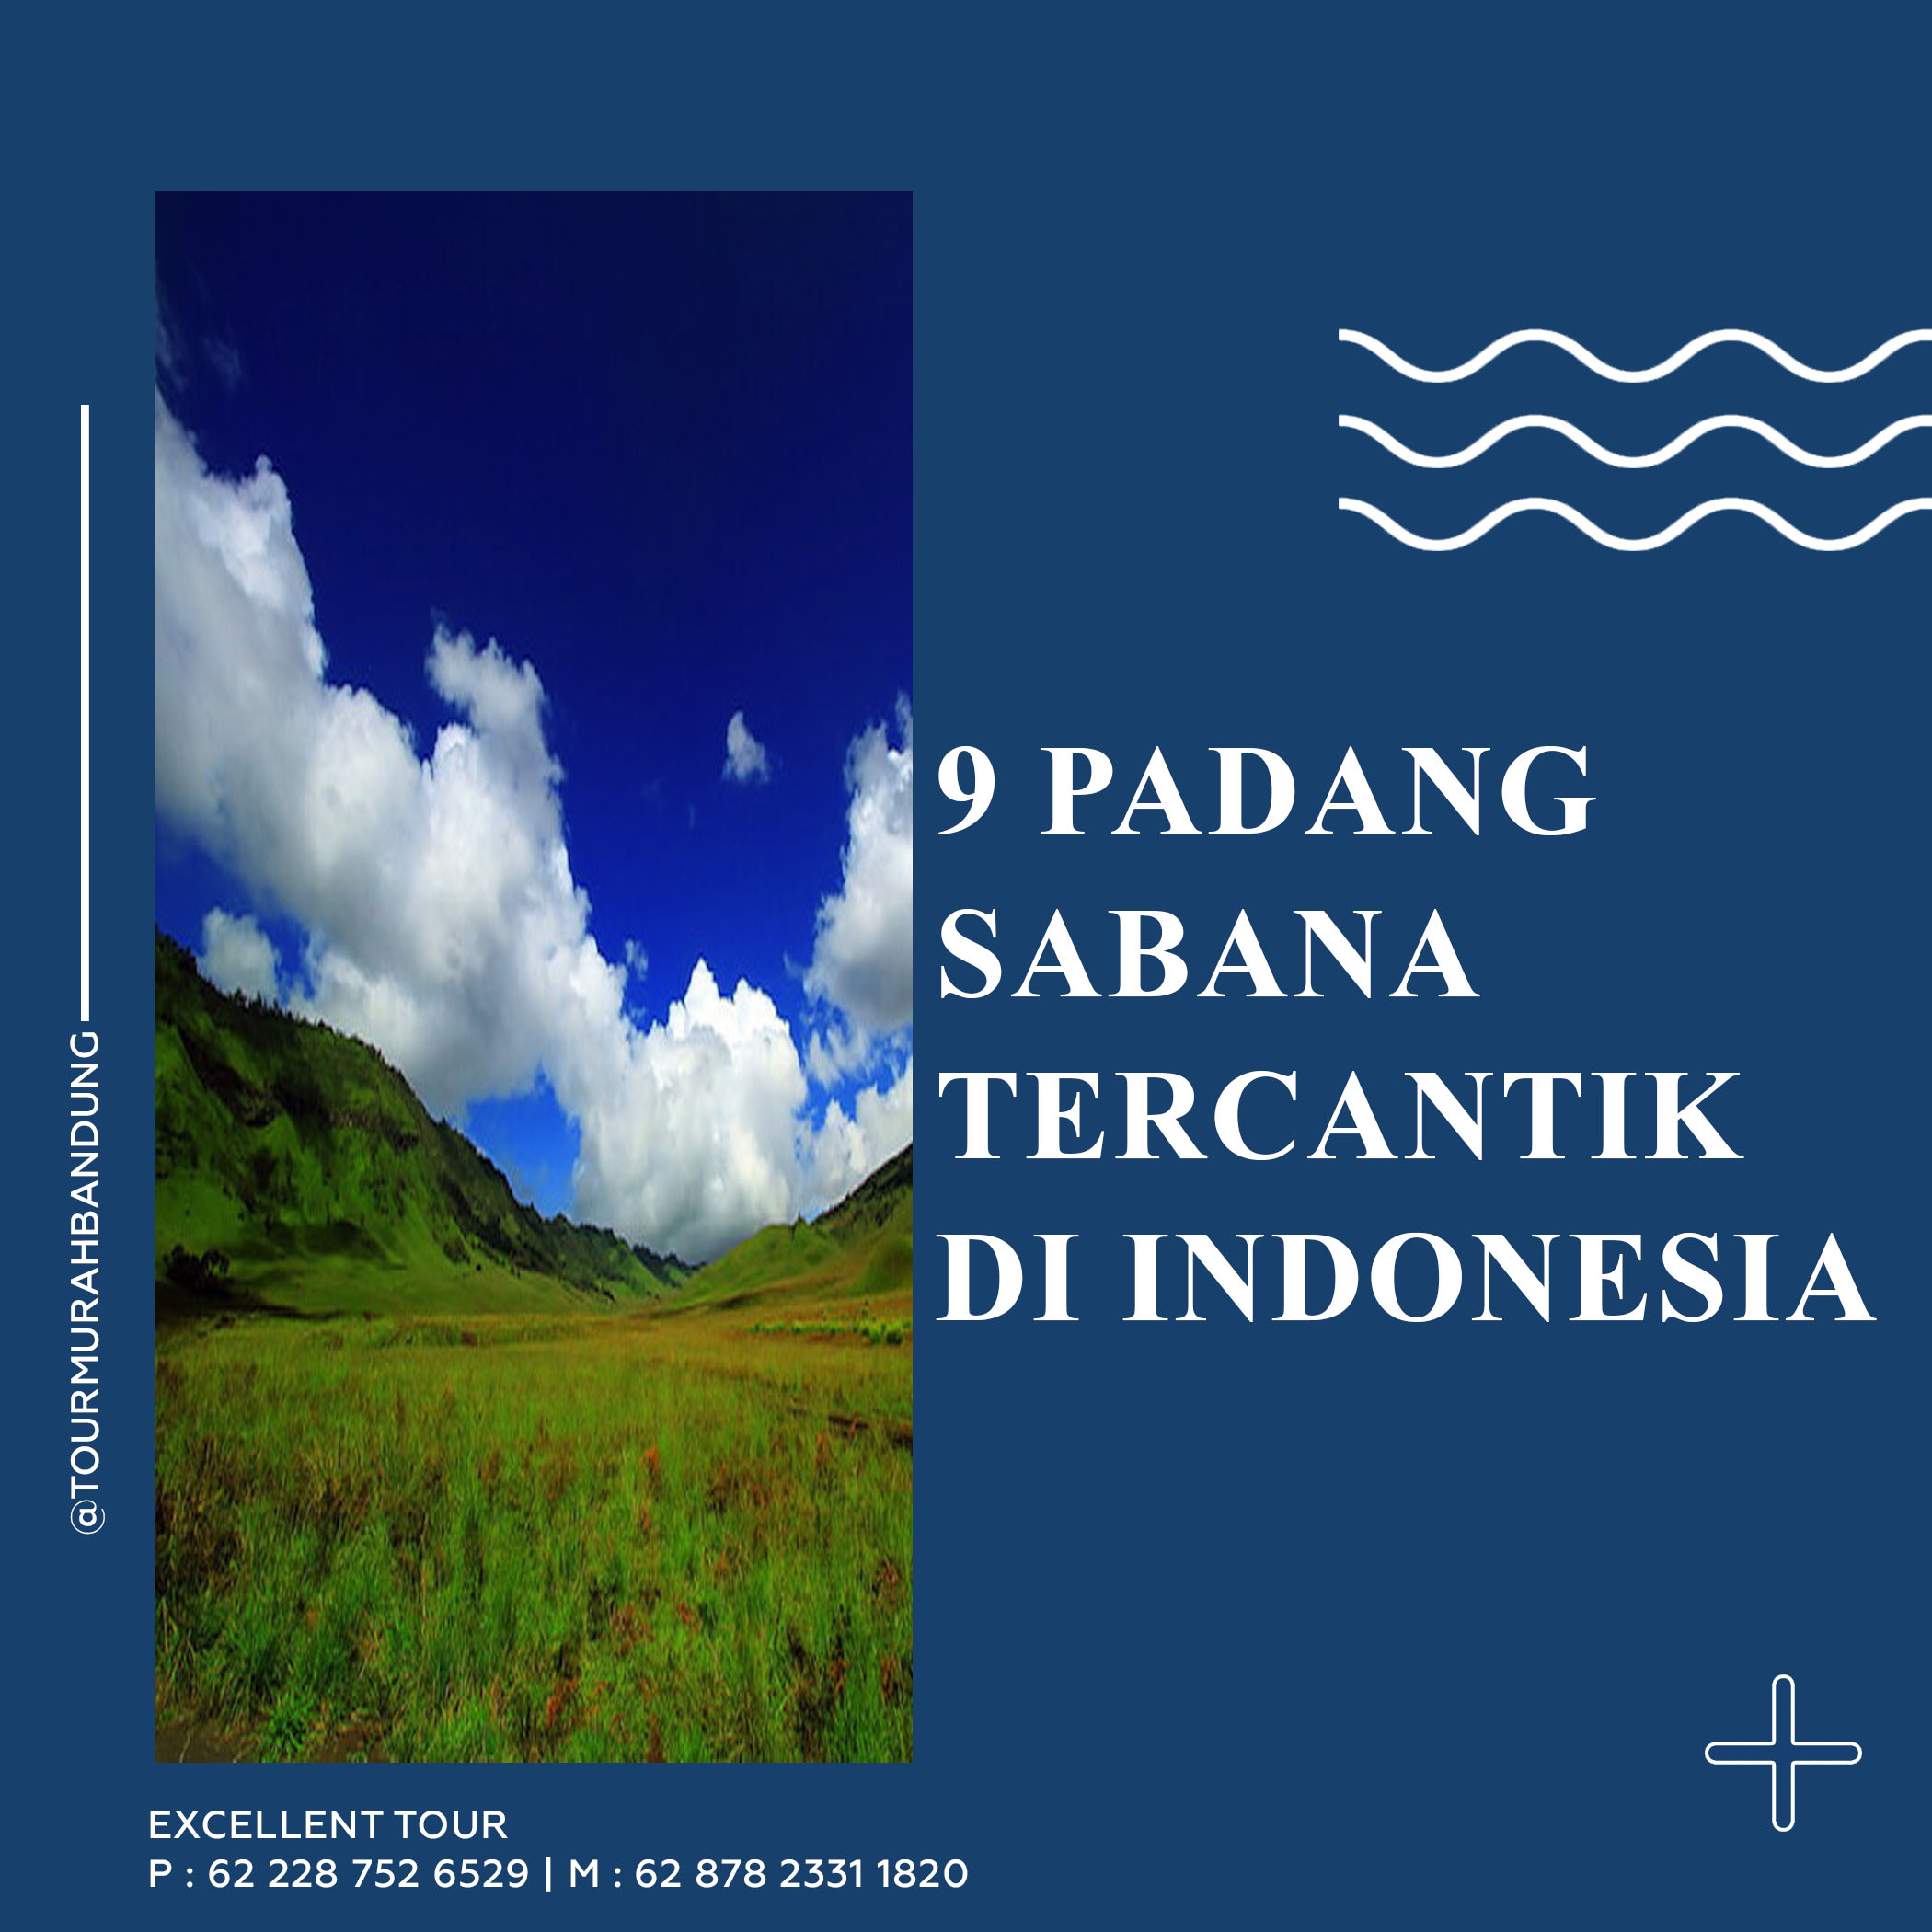 Padang Sabana Tercantik Di Indonesia Excellent Tours And Travel 5667